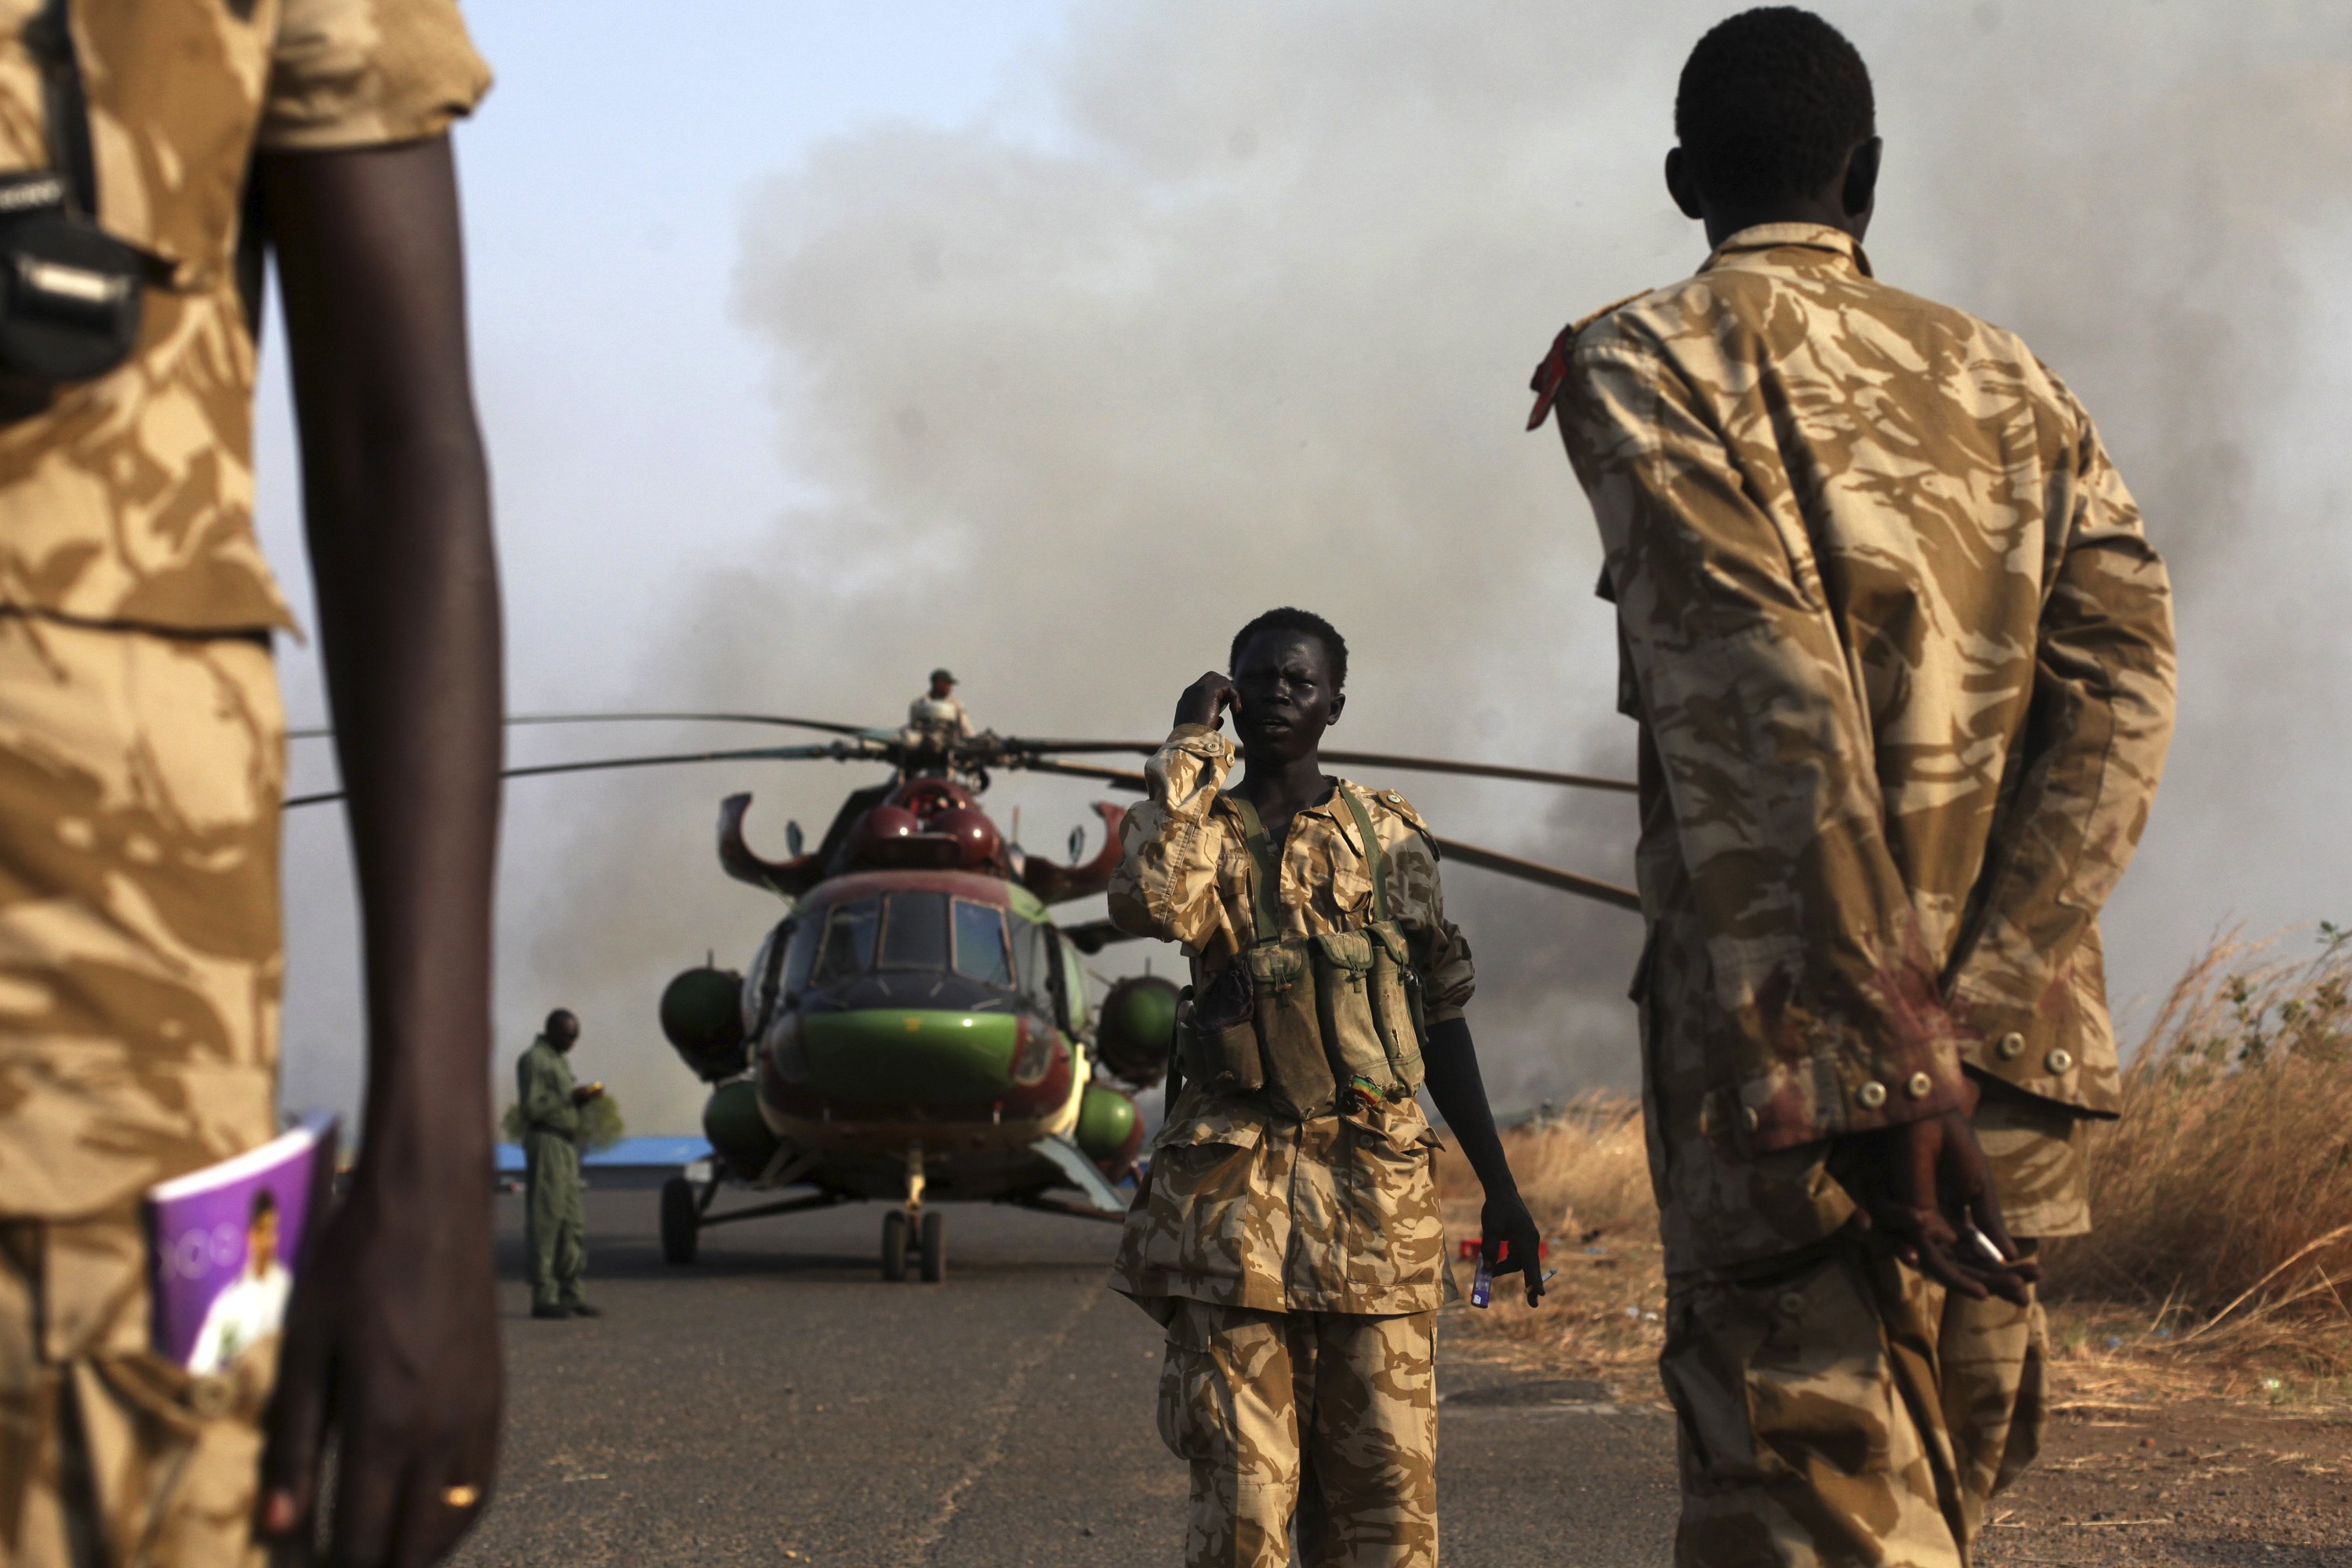 Soudan du Sud: plus de 150 morts dans des combats, la tension reste vive
 
